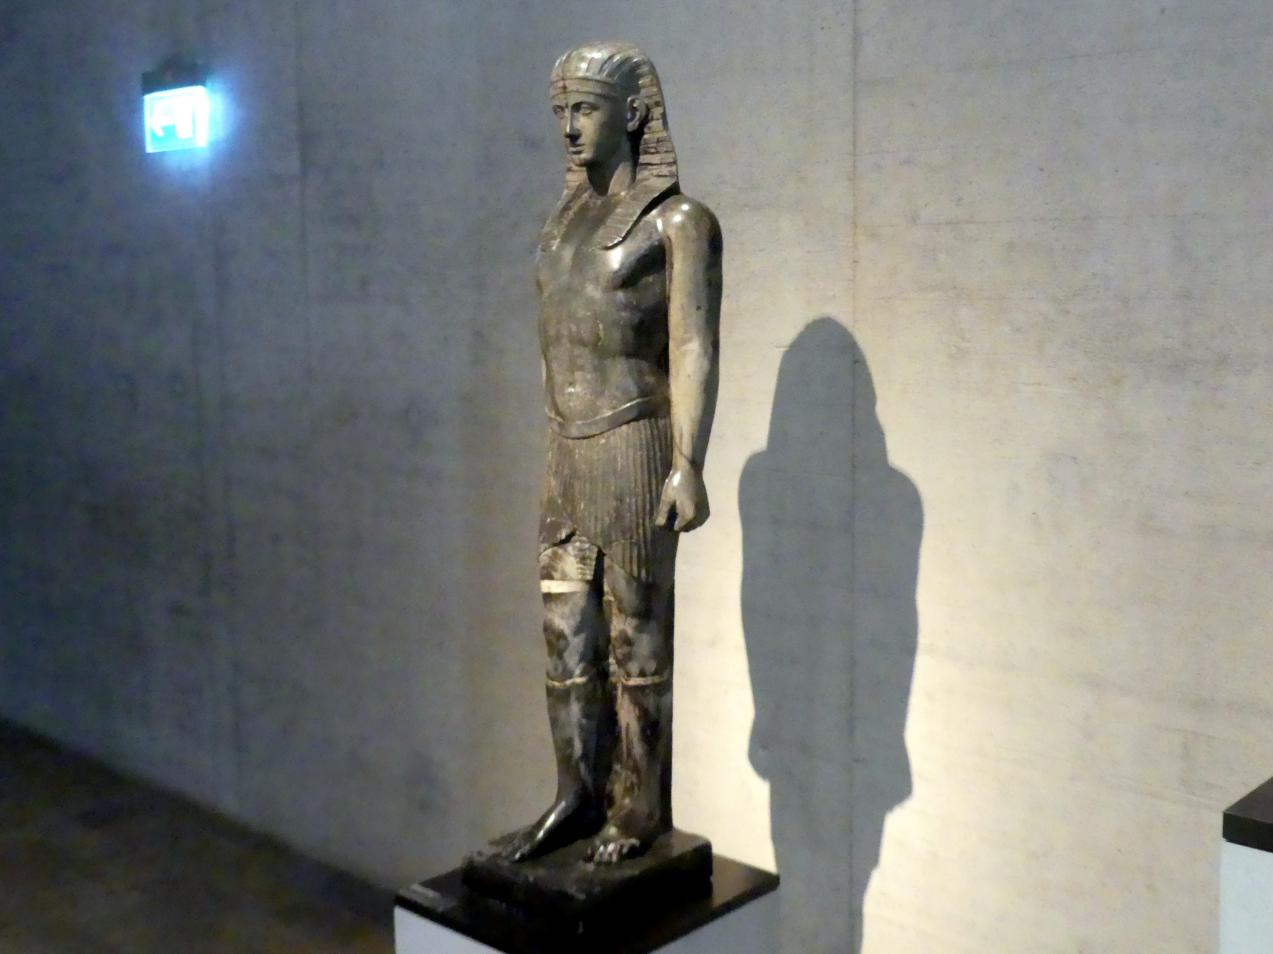 Ägyptisierende Königsstatue, Römische Kaiserzeit, 27 v. Chr. - 54 n. Chr., 135, Bild 2/4